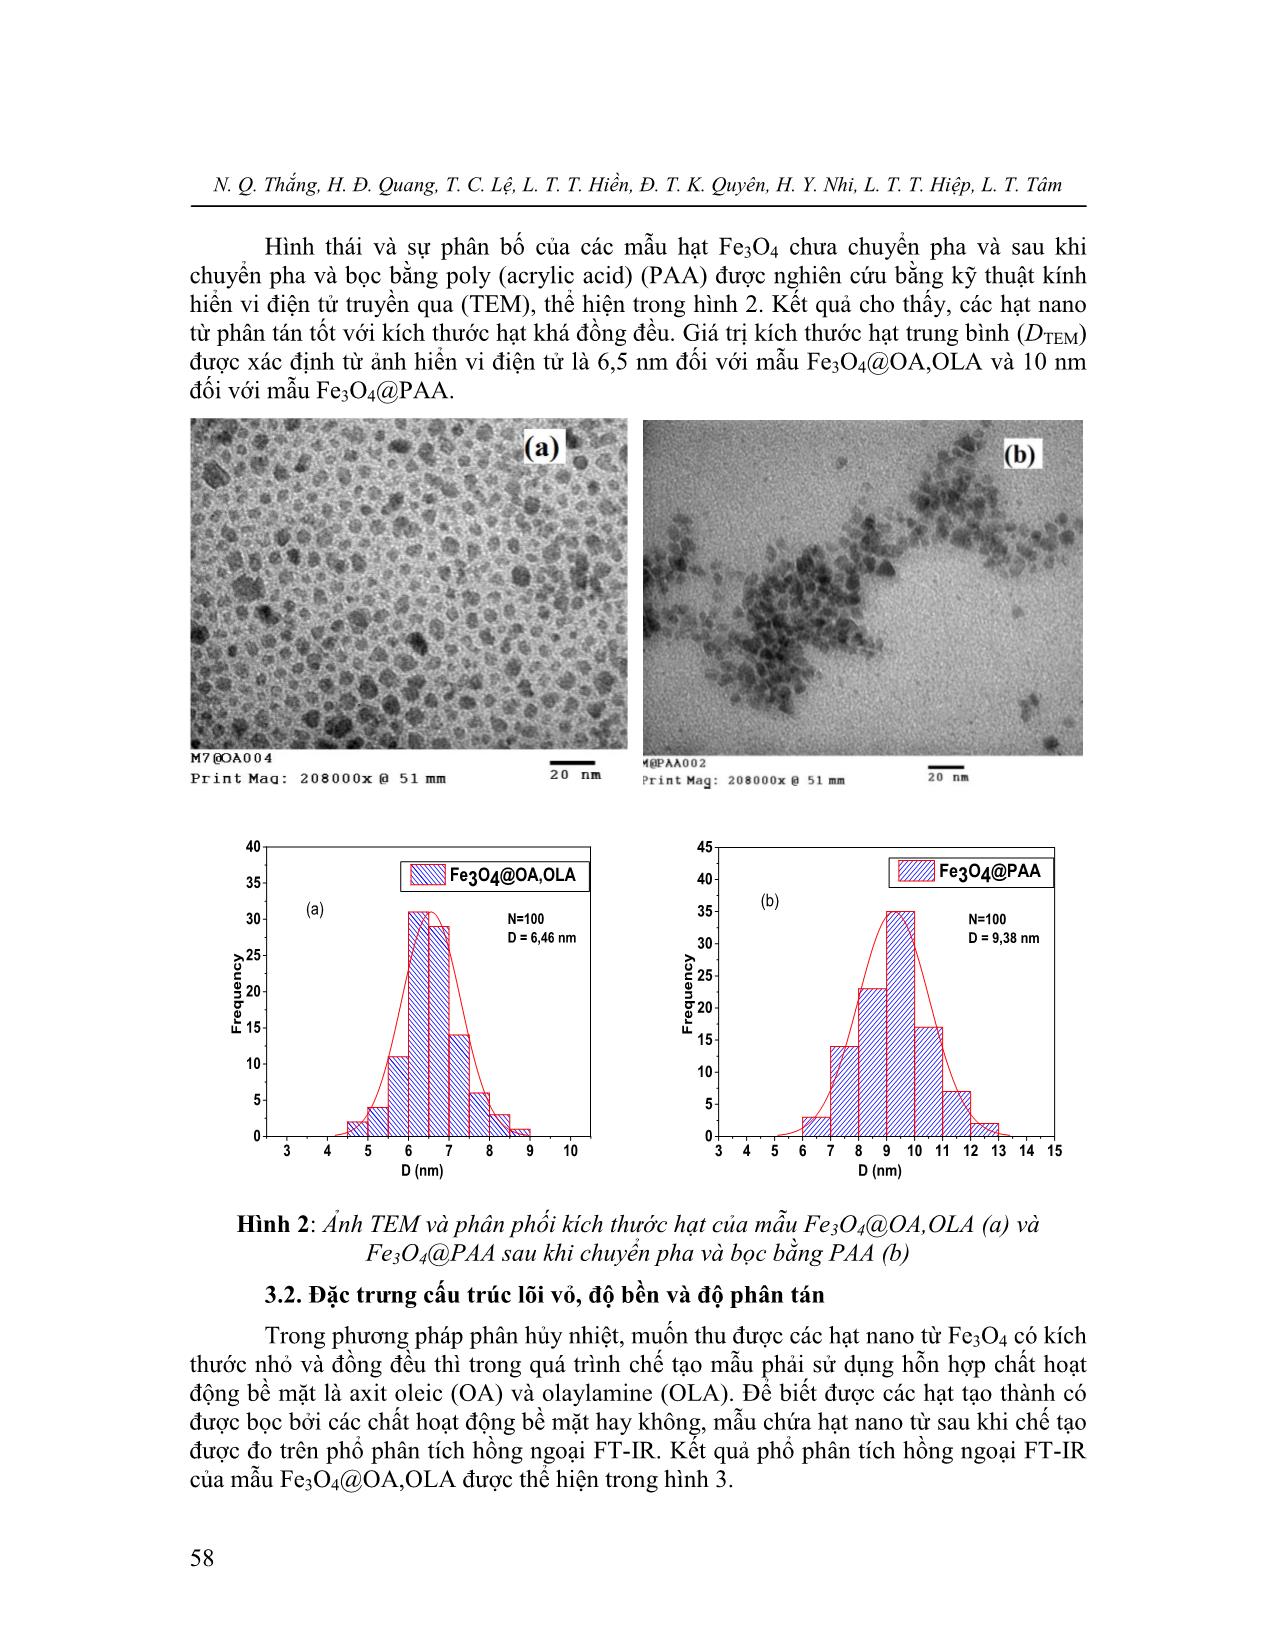 Đặc trưng cấu trúc, hình thái, tính chất hạt nano từ tính Fe3O4  tổng hợp bằng phương pháp phân hủy nhiệt trang 4